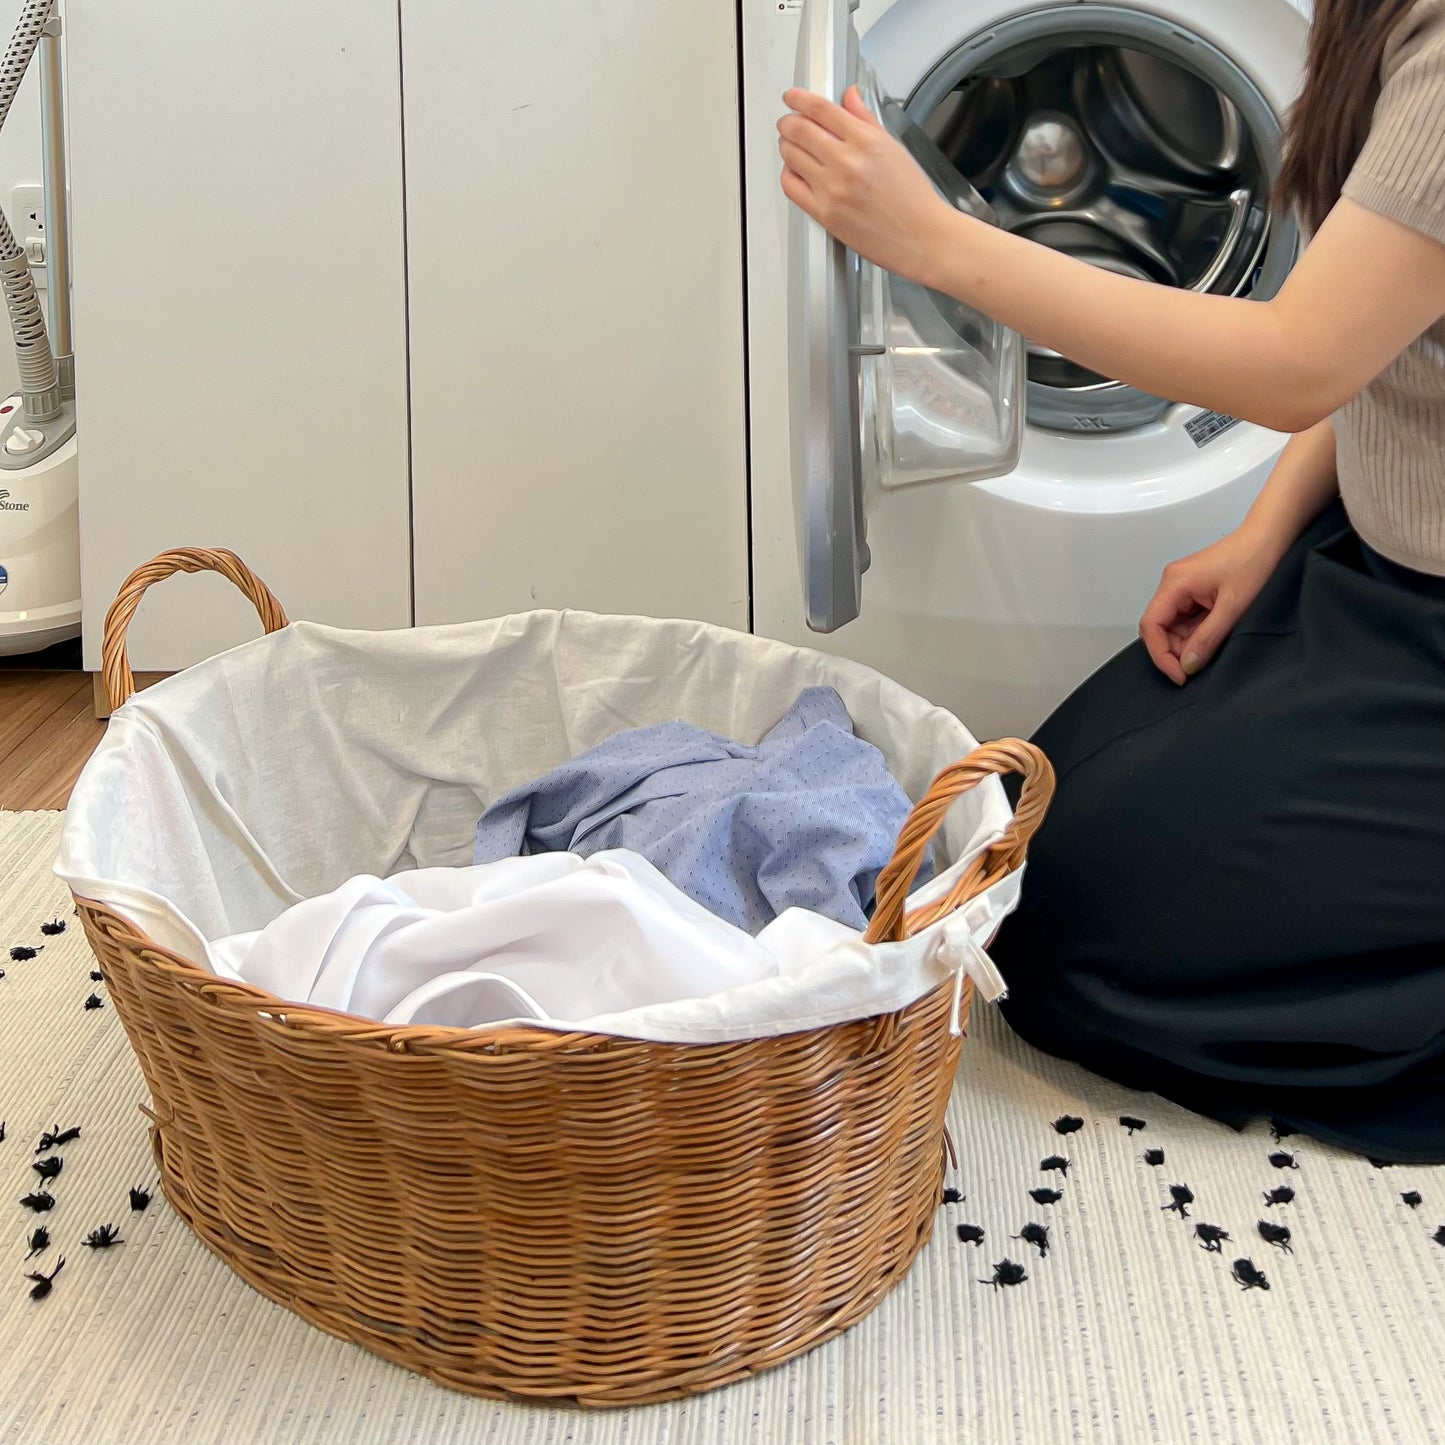 Giỏ đựng quần áo bẩn trong phòng giặt ủi/ phòng tắm